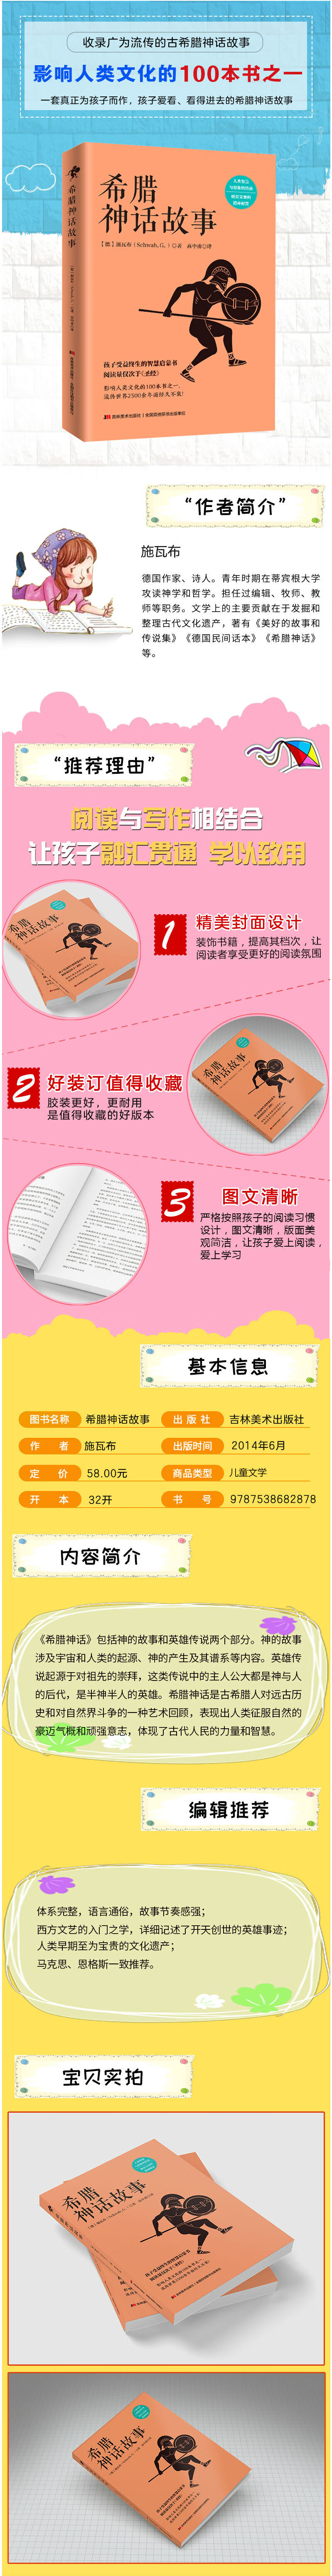 希腊神话故事 德 施瓦布 摘要书评试读 华文图书t Magazine China Weibo 华文书店chinesebook